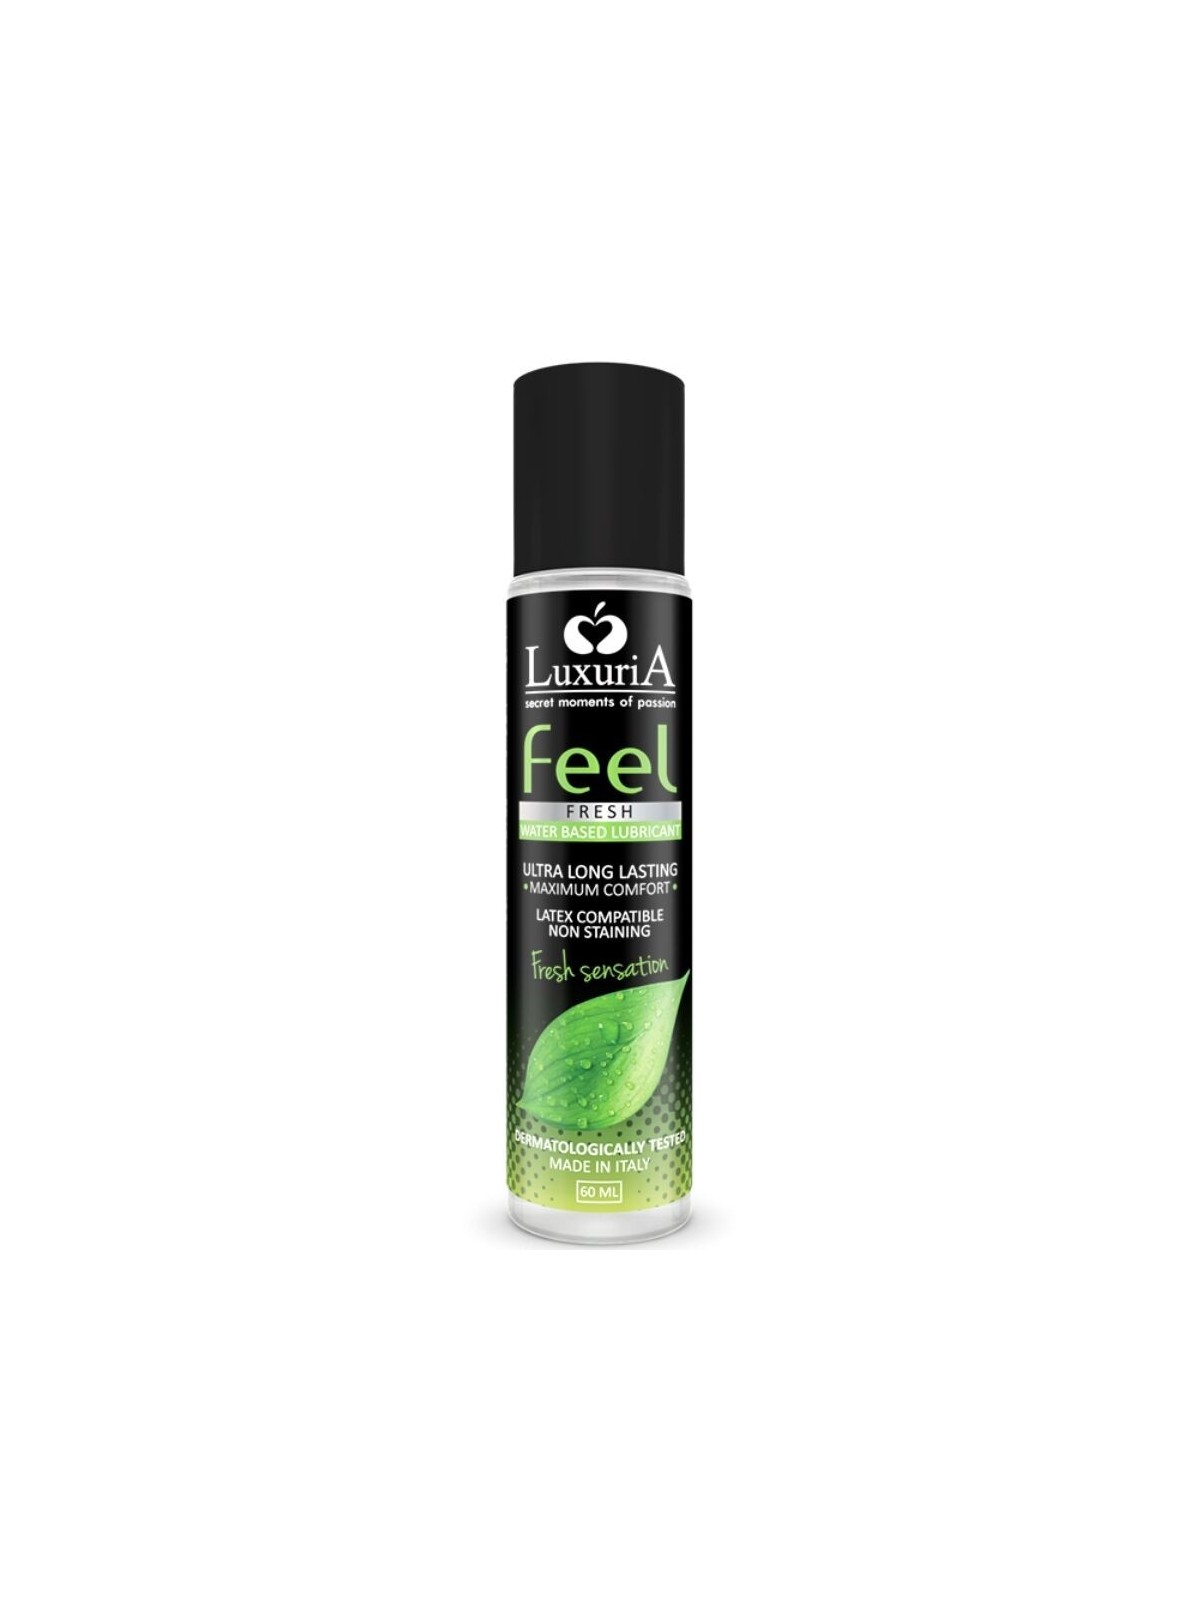 Luxuria Feel Fresh Sensation Lubricante Efecto Frio 60 ml - Comprar Gel efecto frío Luxuria - Lubricantes efecto frío (1)